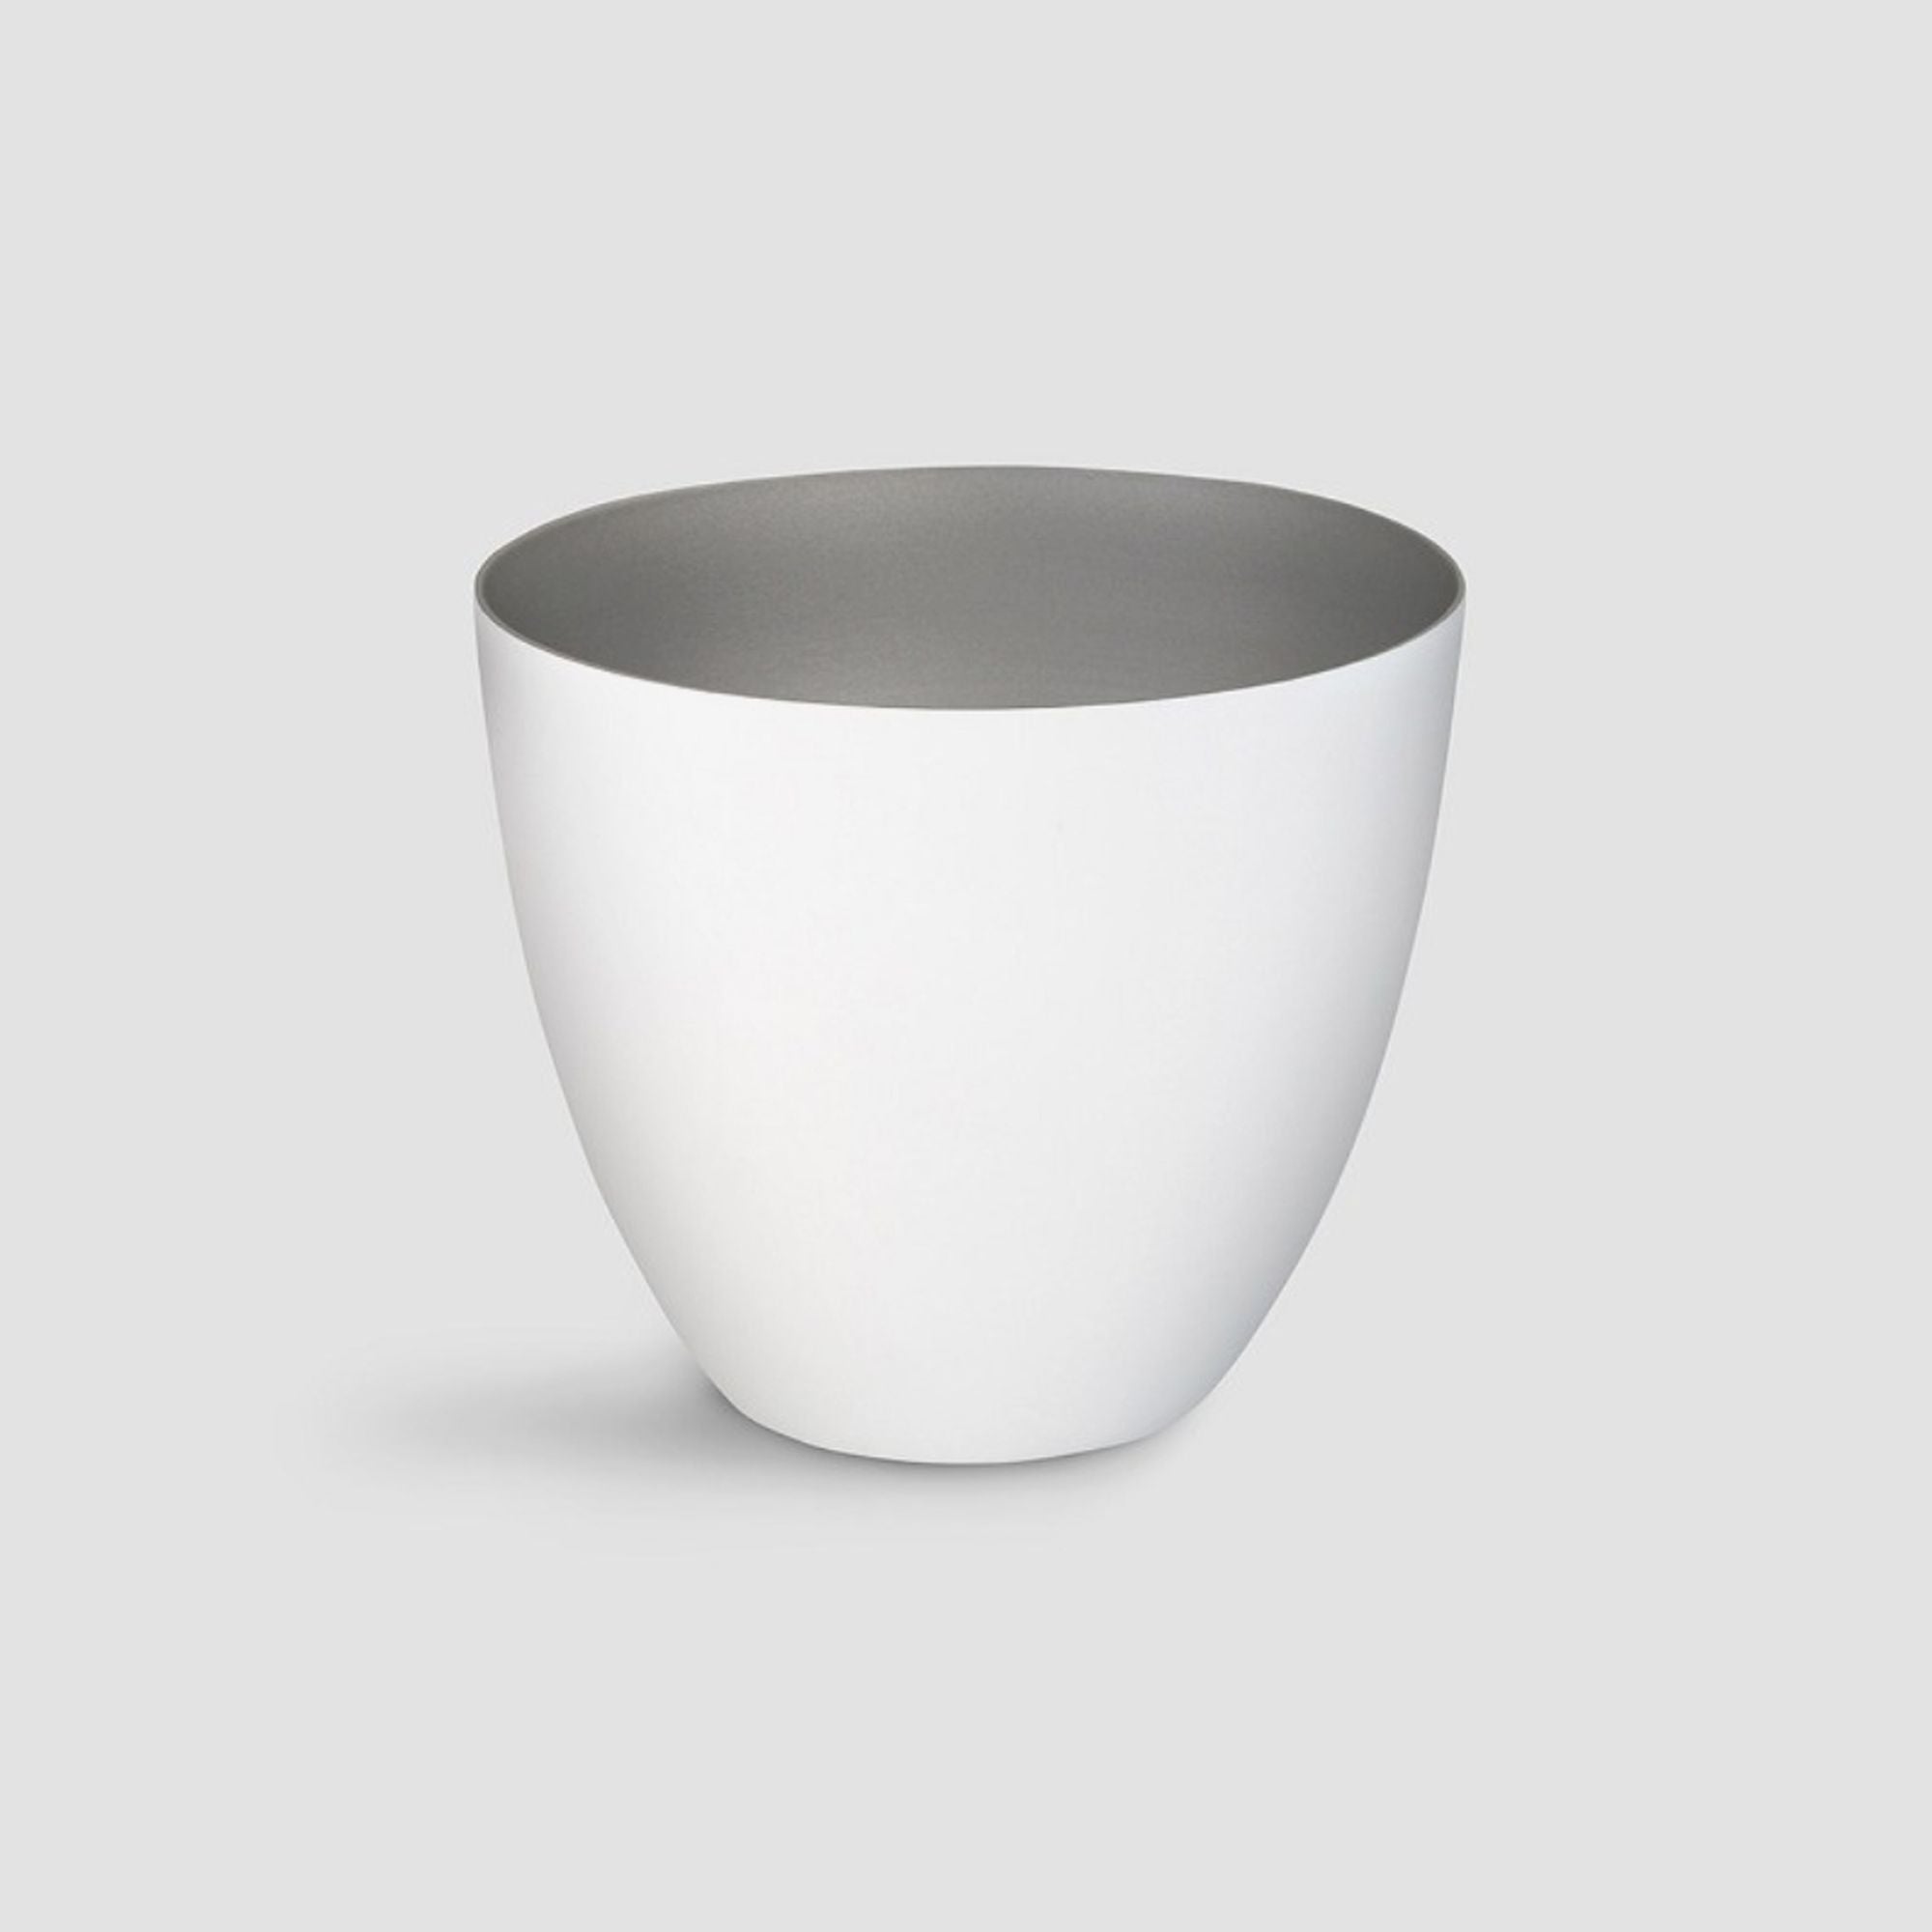 Teelichthalter aus feinem Porzellan in zwei Größen - weiß